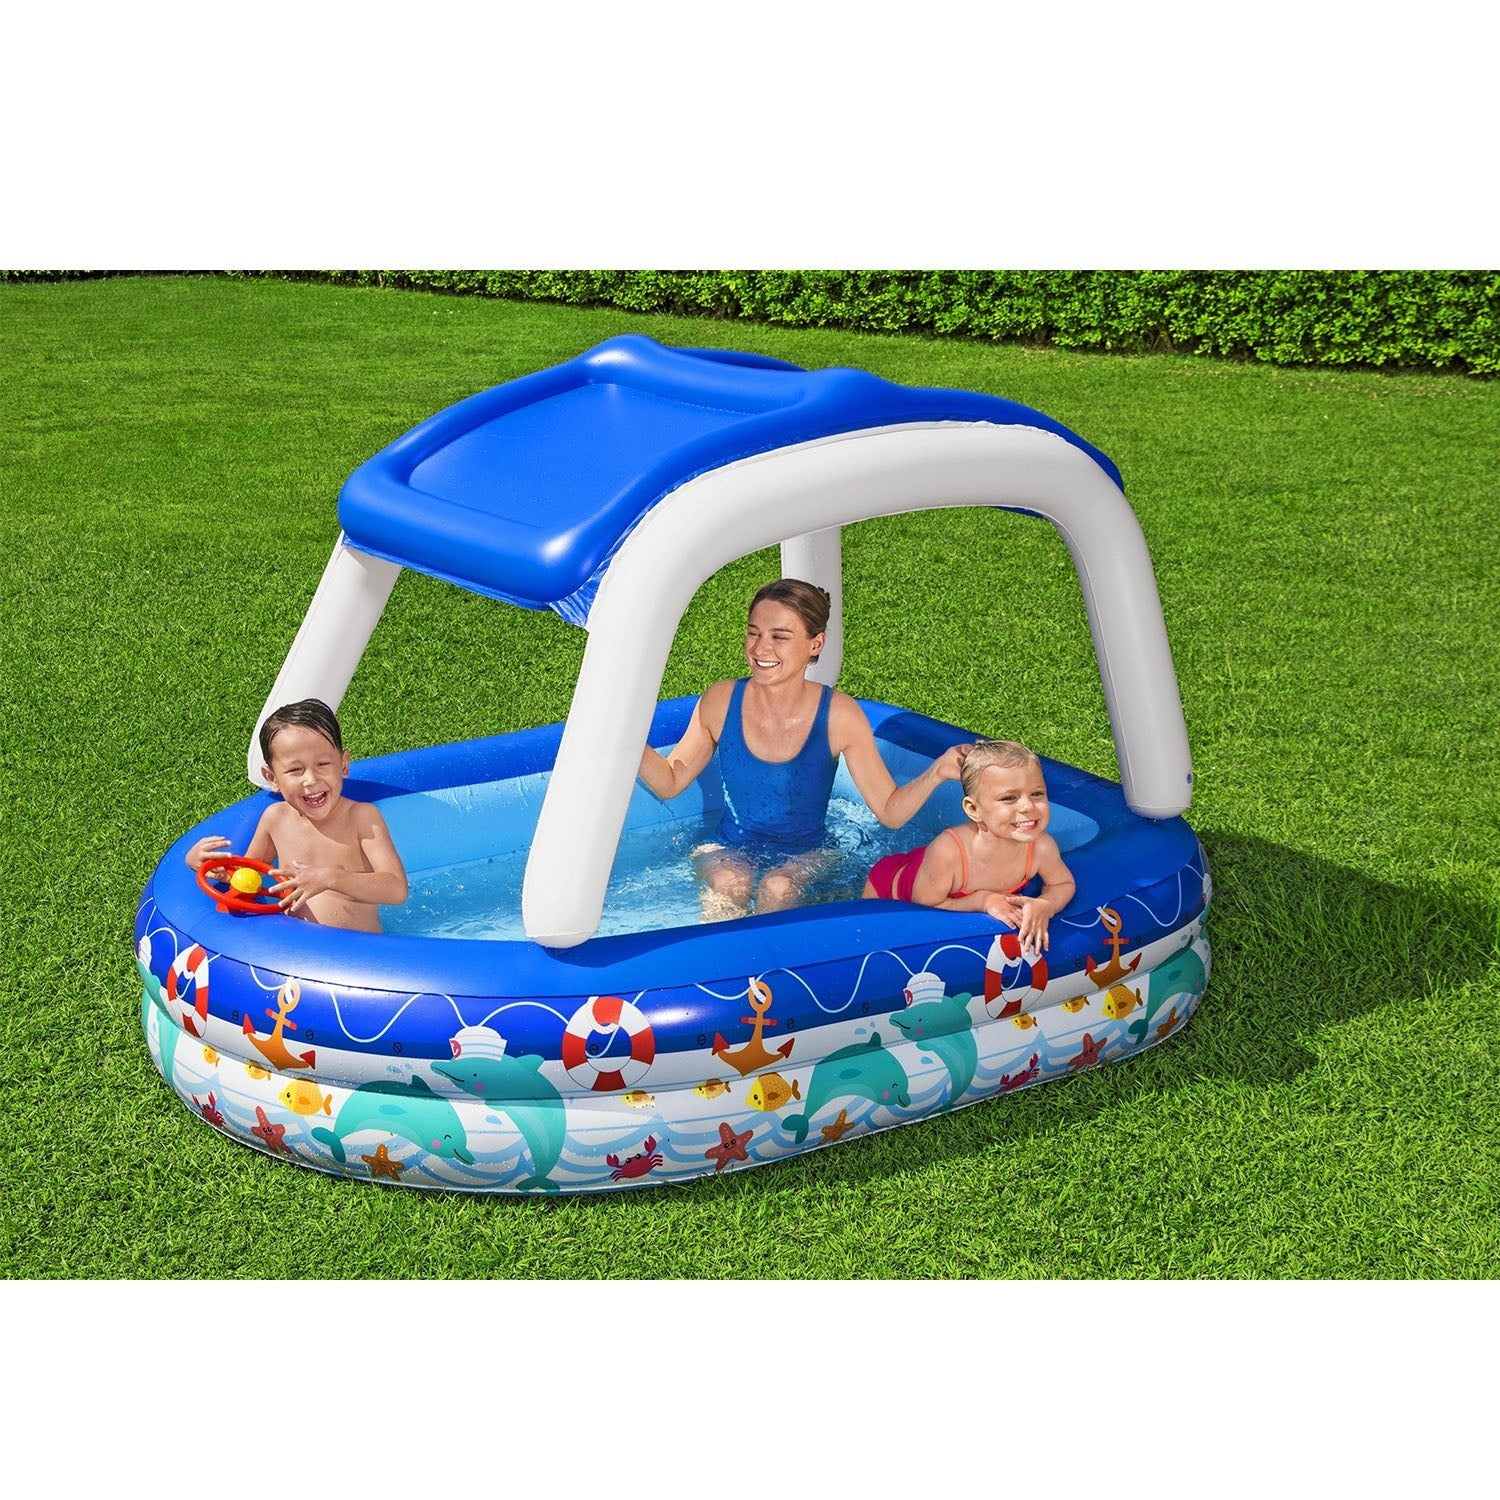 Bestway H2OGO! Sea Captain Family Pool with UV Sunshade, Bestway H2OGO! pool, inflatable kiddie pool, small backyard pool for kids, sea captain inflatable swimming pool, inflatable above ground swimming pool